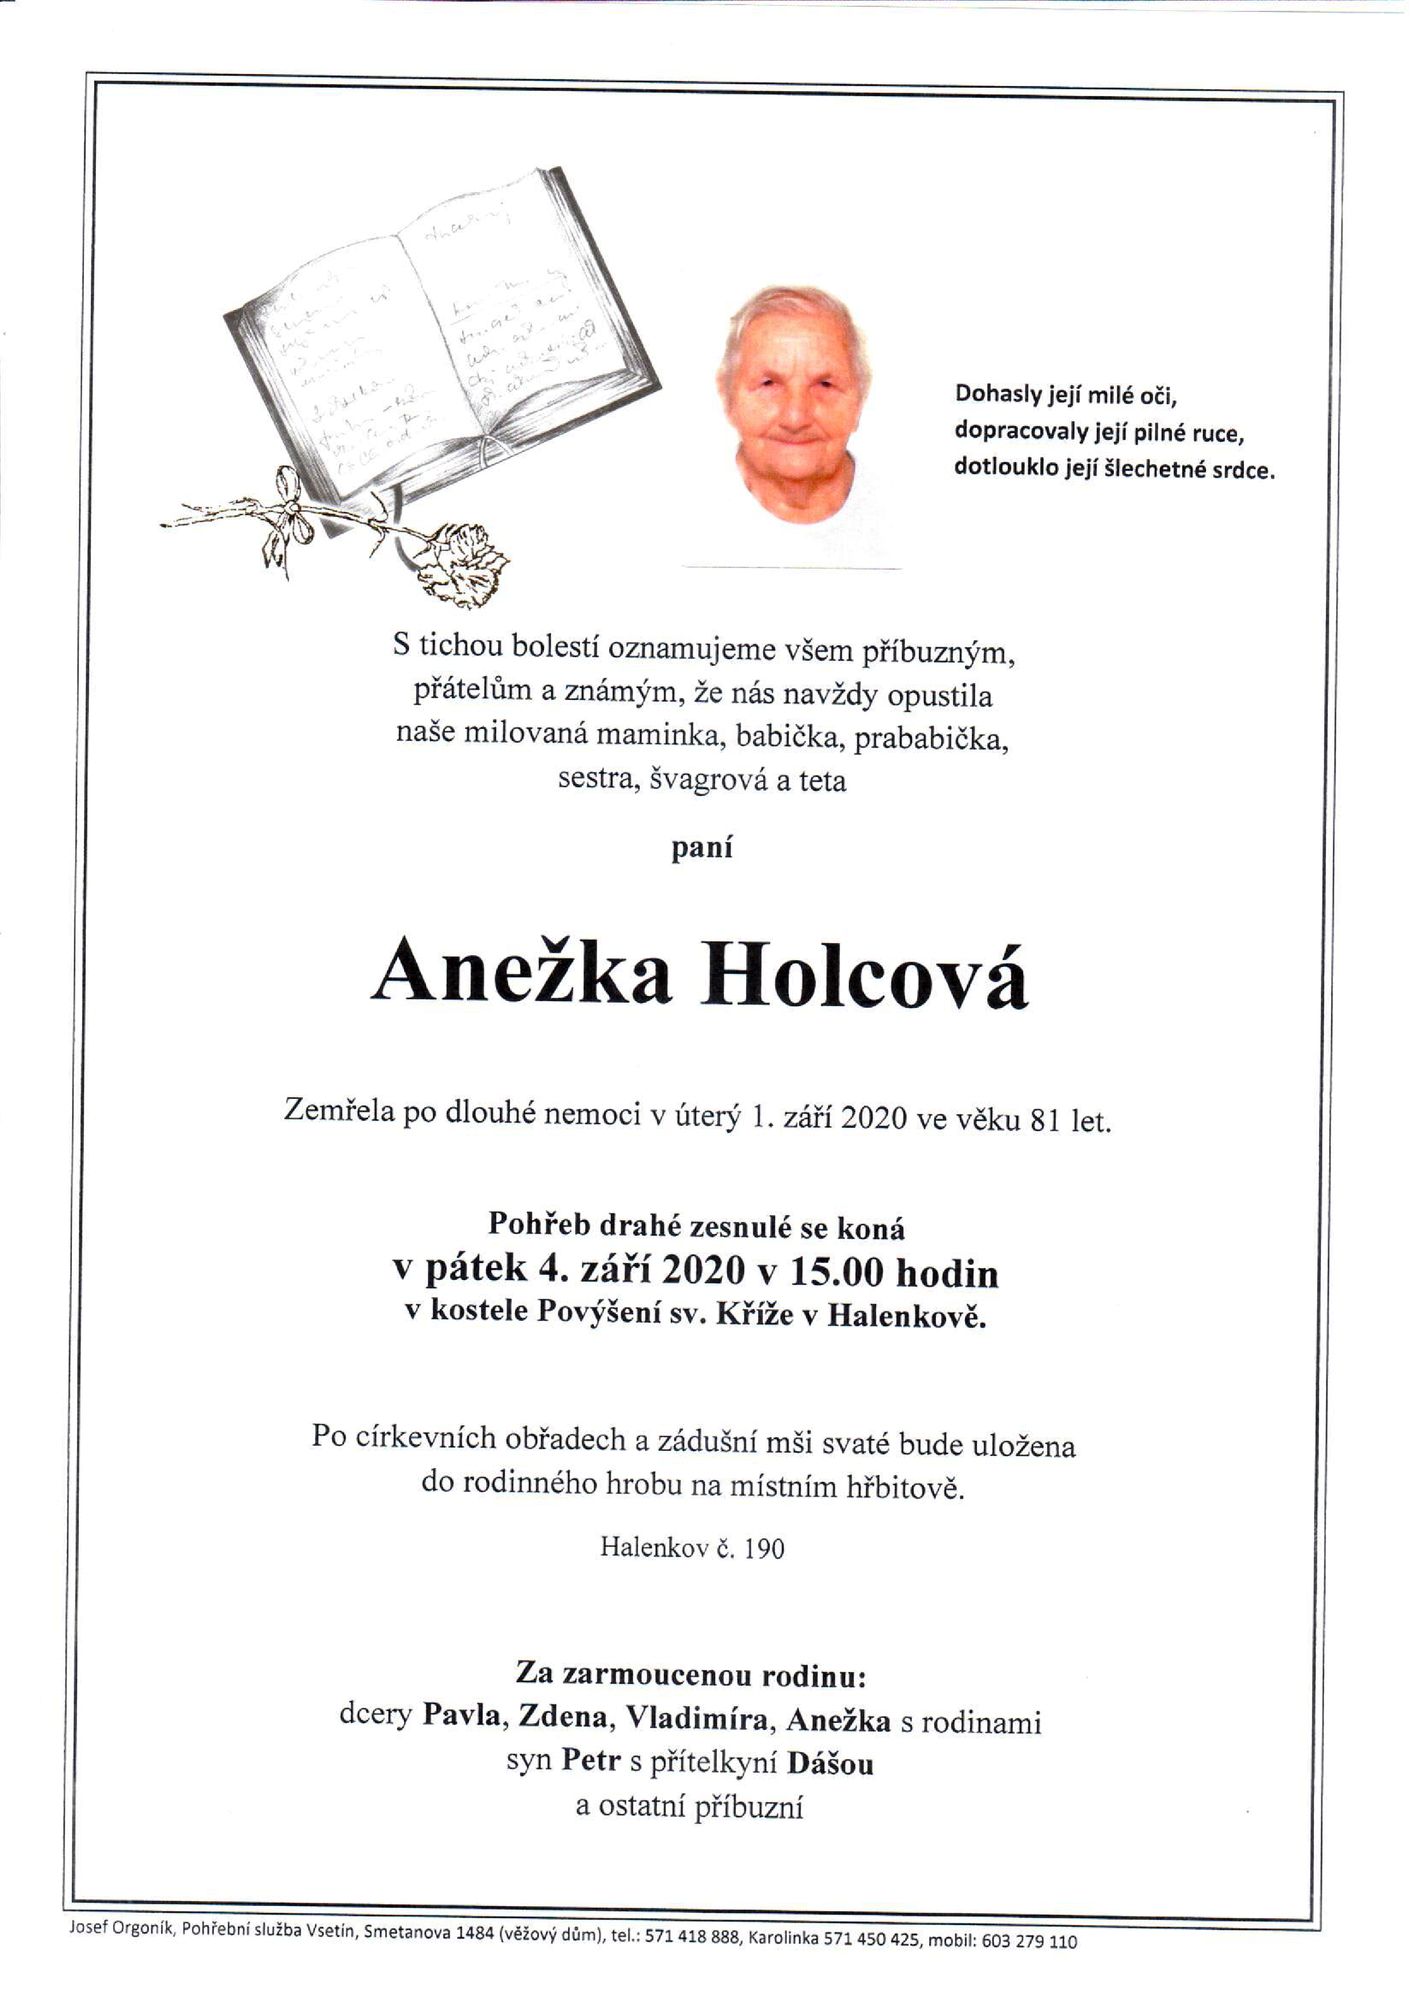 Anežka Holcová